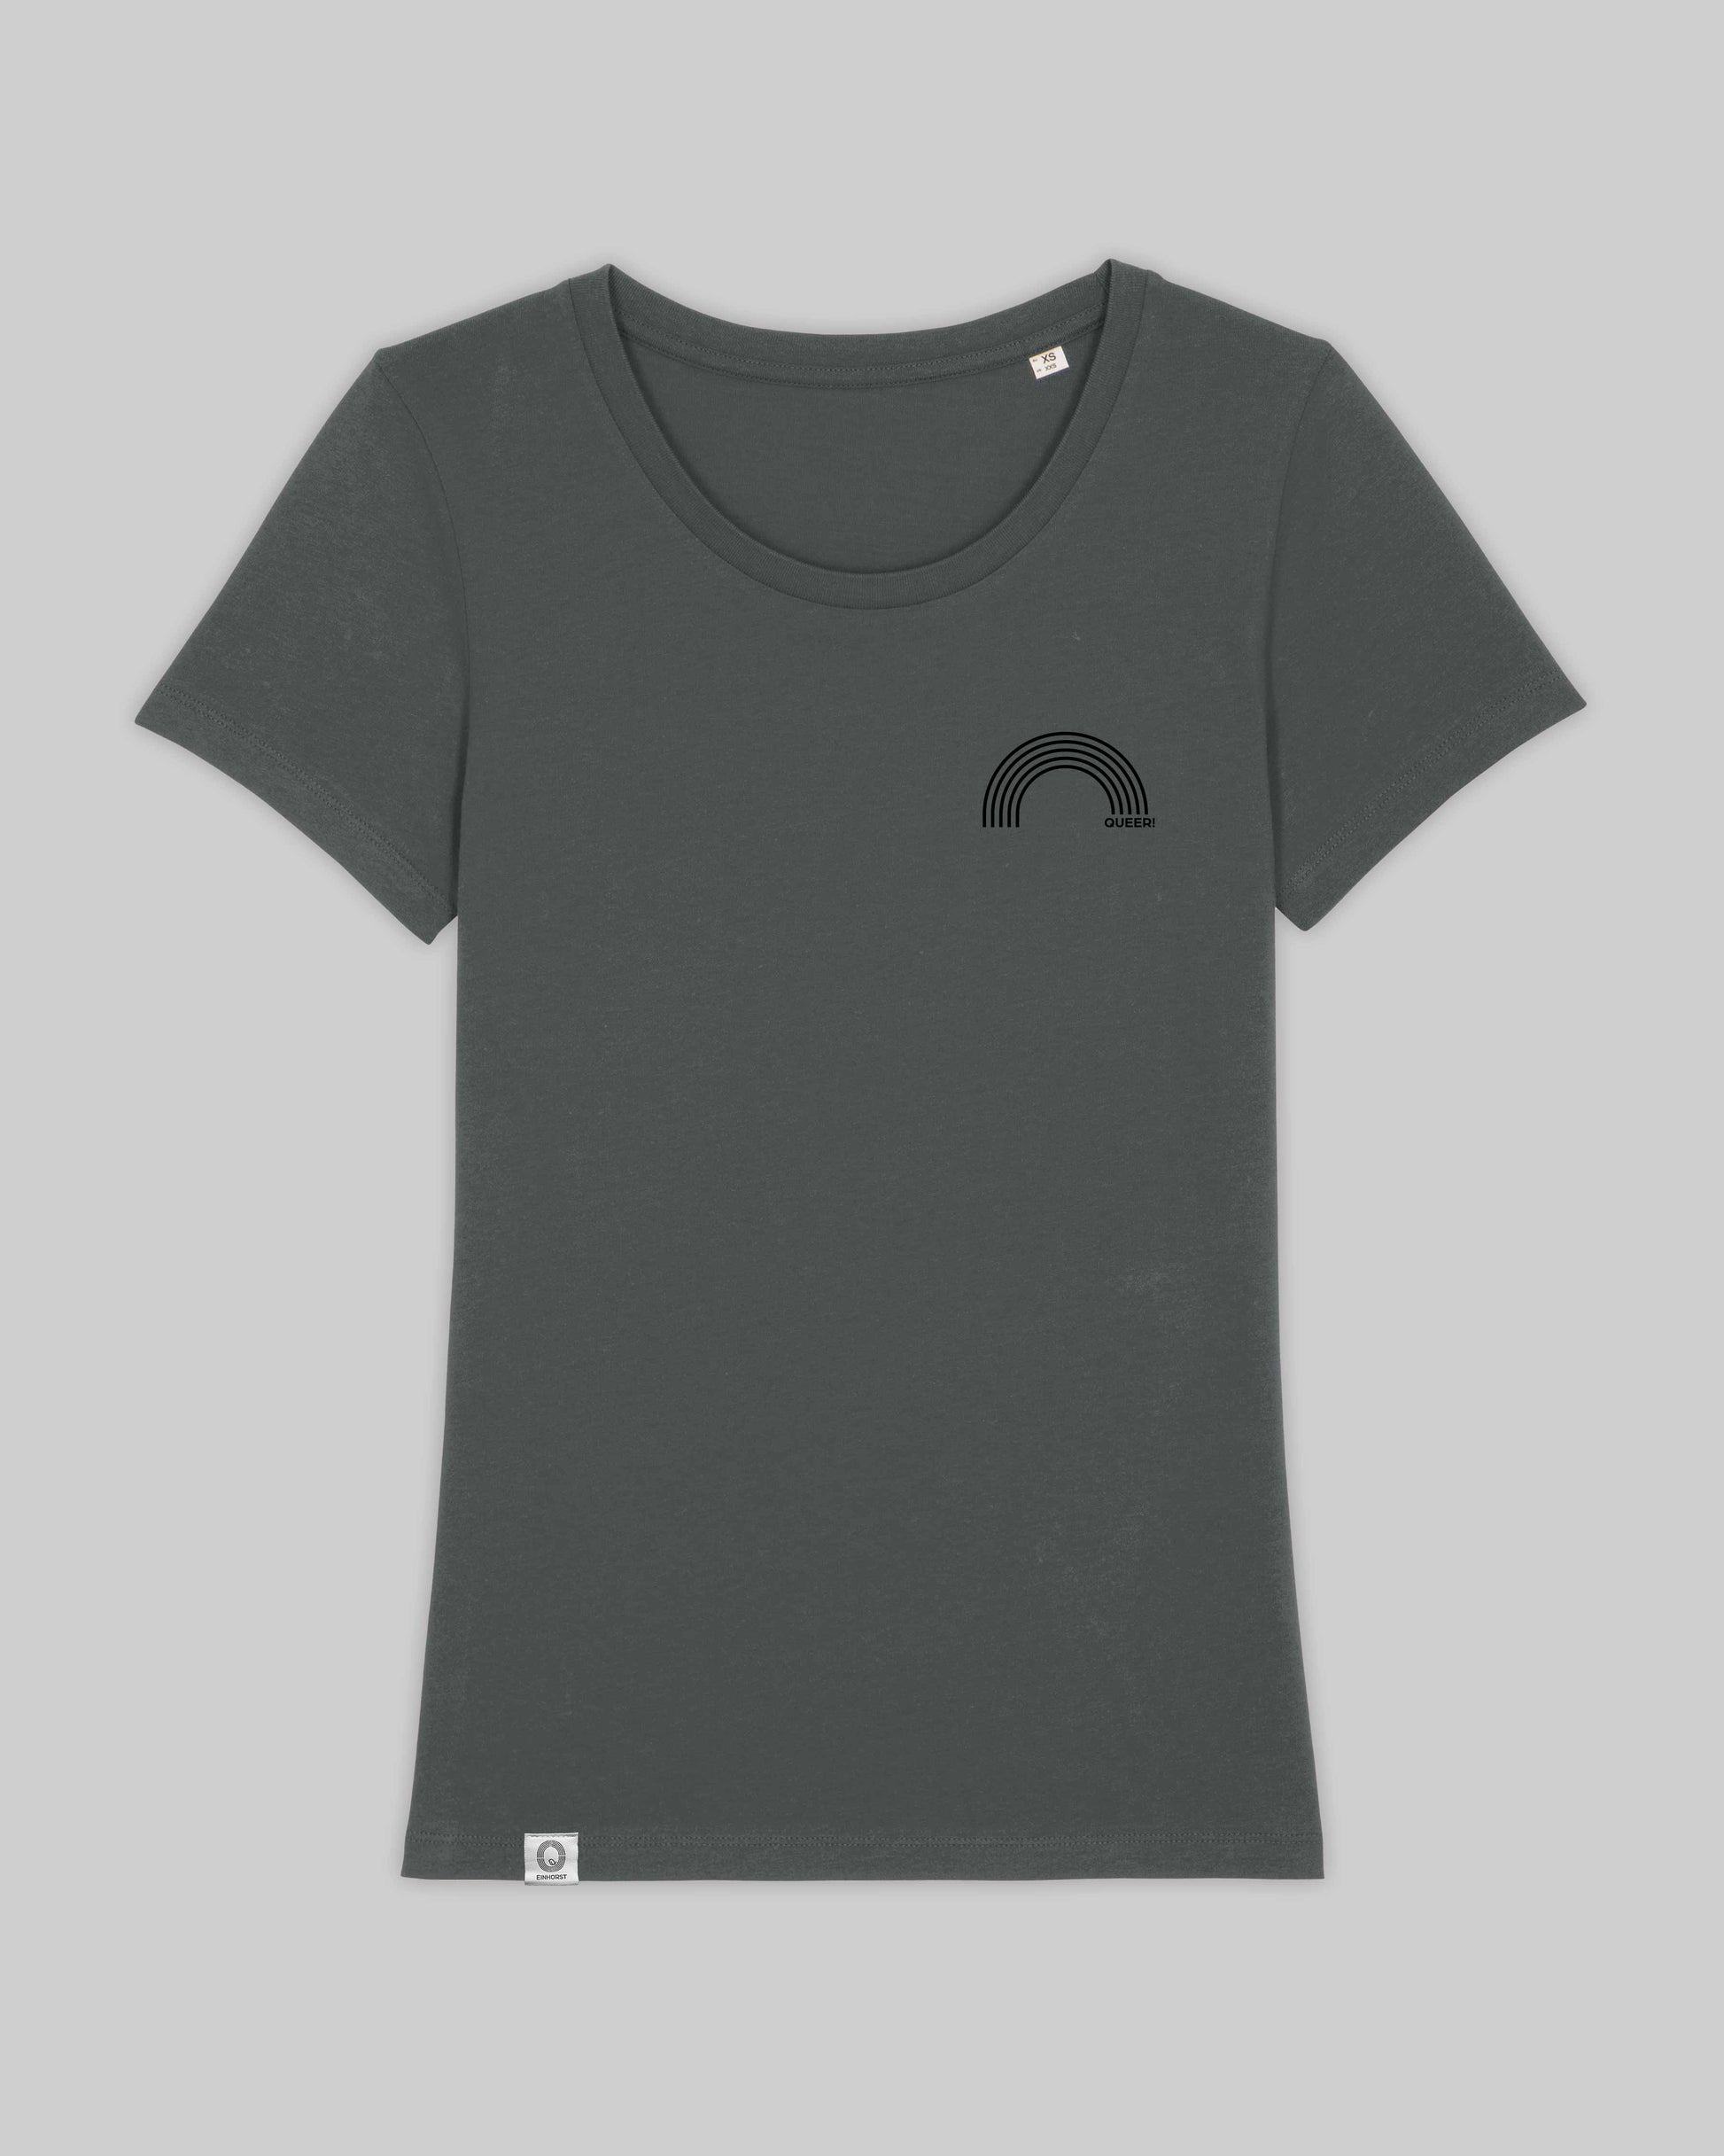 EINHORST® Organic Shirt tailliert in "Anthracite" mit dem Motiv "queer Regenbogen" in der Kombination schwarzer Regenbogen mit schwarzer Schrift, Bild von Shirt von vorne